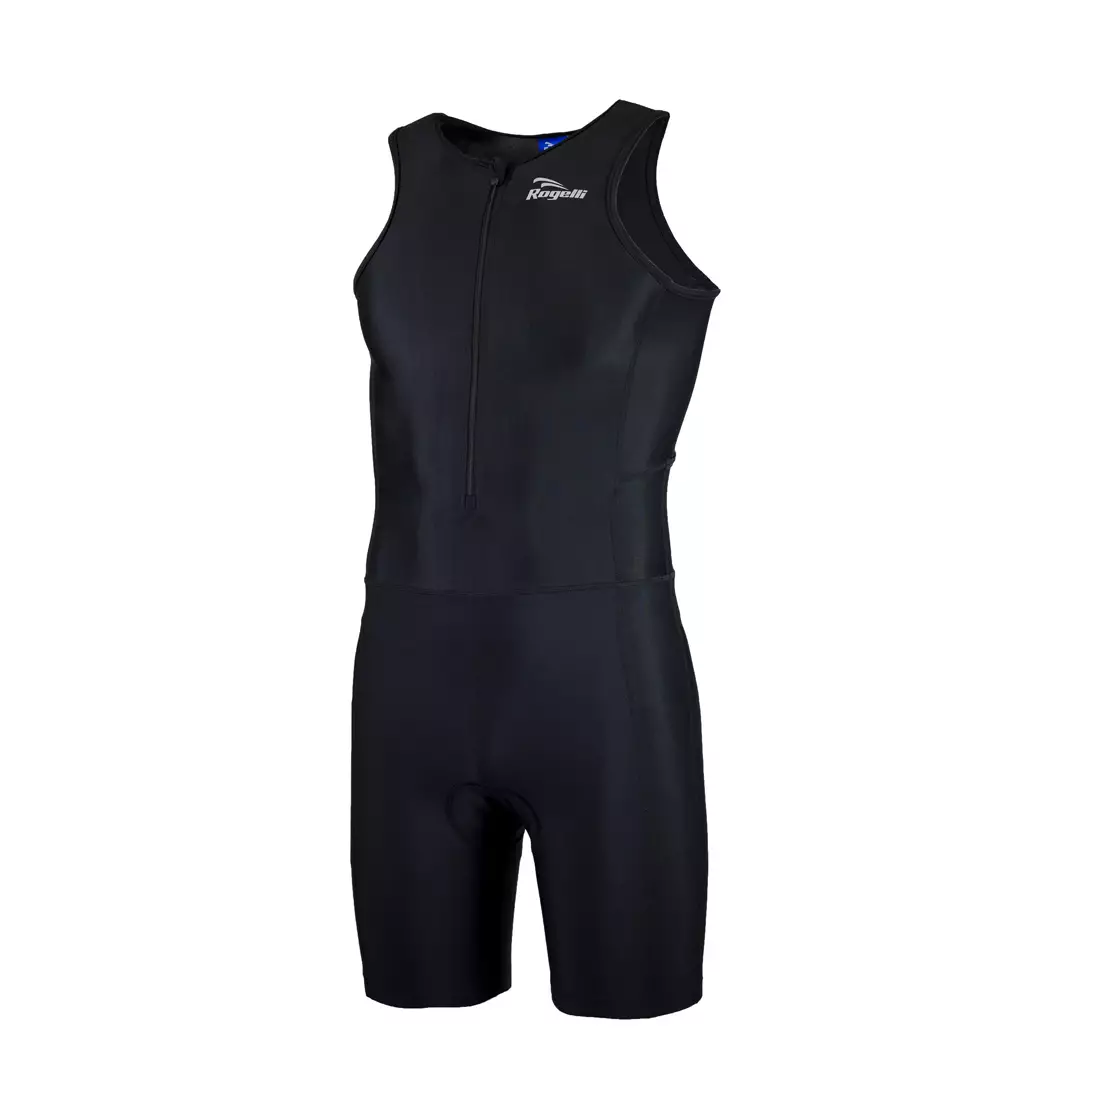 ROGELLI TRI FLORIDA 030.003  men's triathlon suit, black